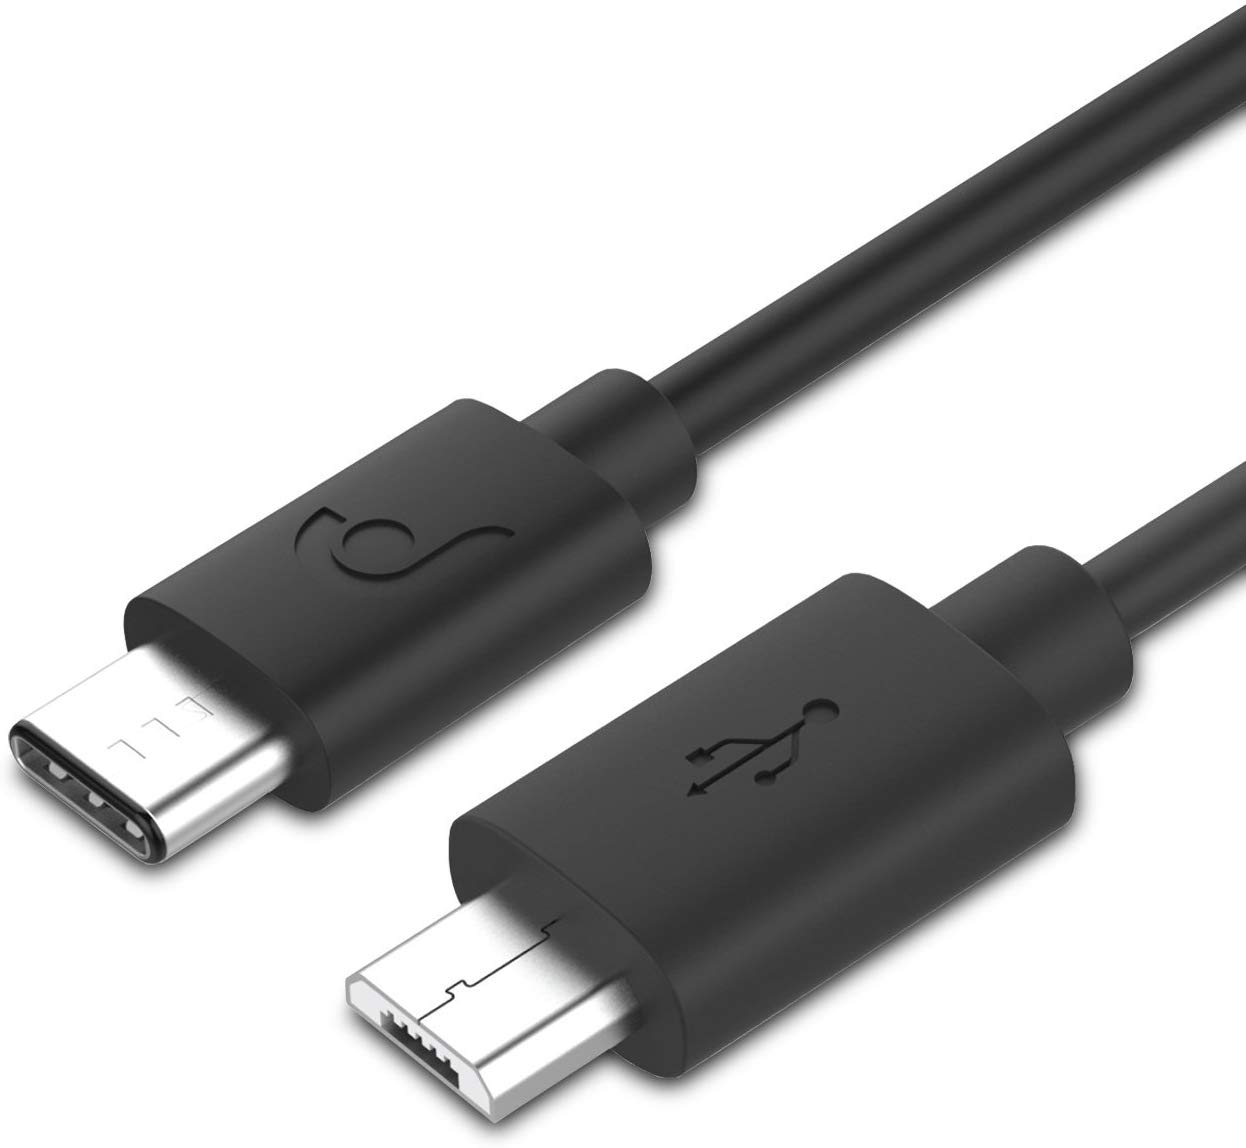 Usb c vs usb. Кабель Micro USB Type c. Кабель USB-C Micro USB. Микро юсб Type c. USB 3.1 Type-c.